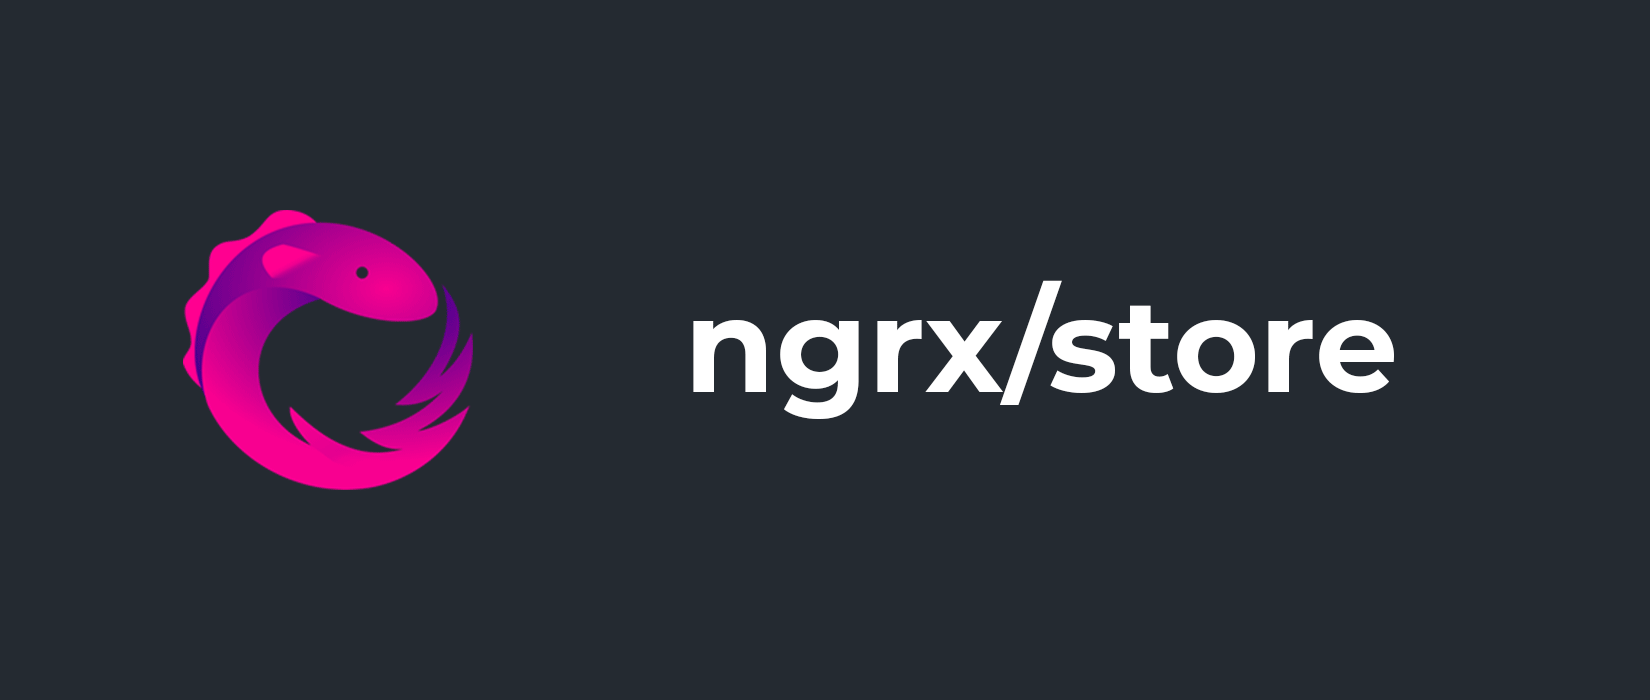 Ngrx چیست و چه زمانی از یک storage استفاده کنیم؟